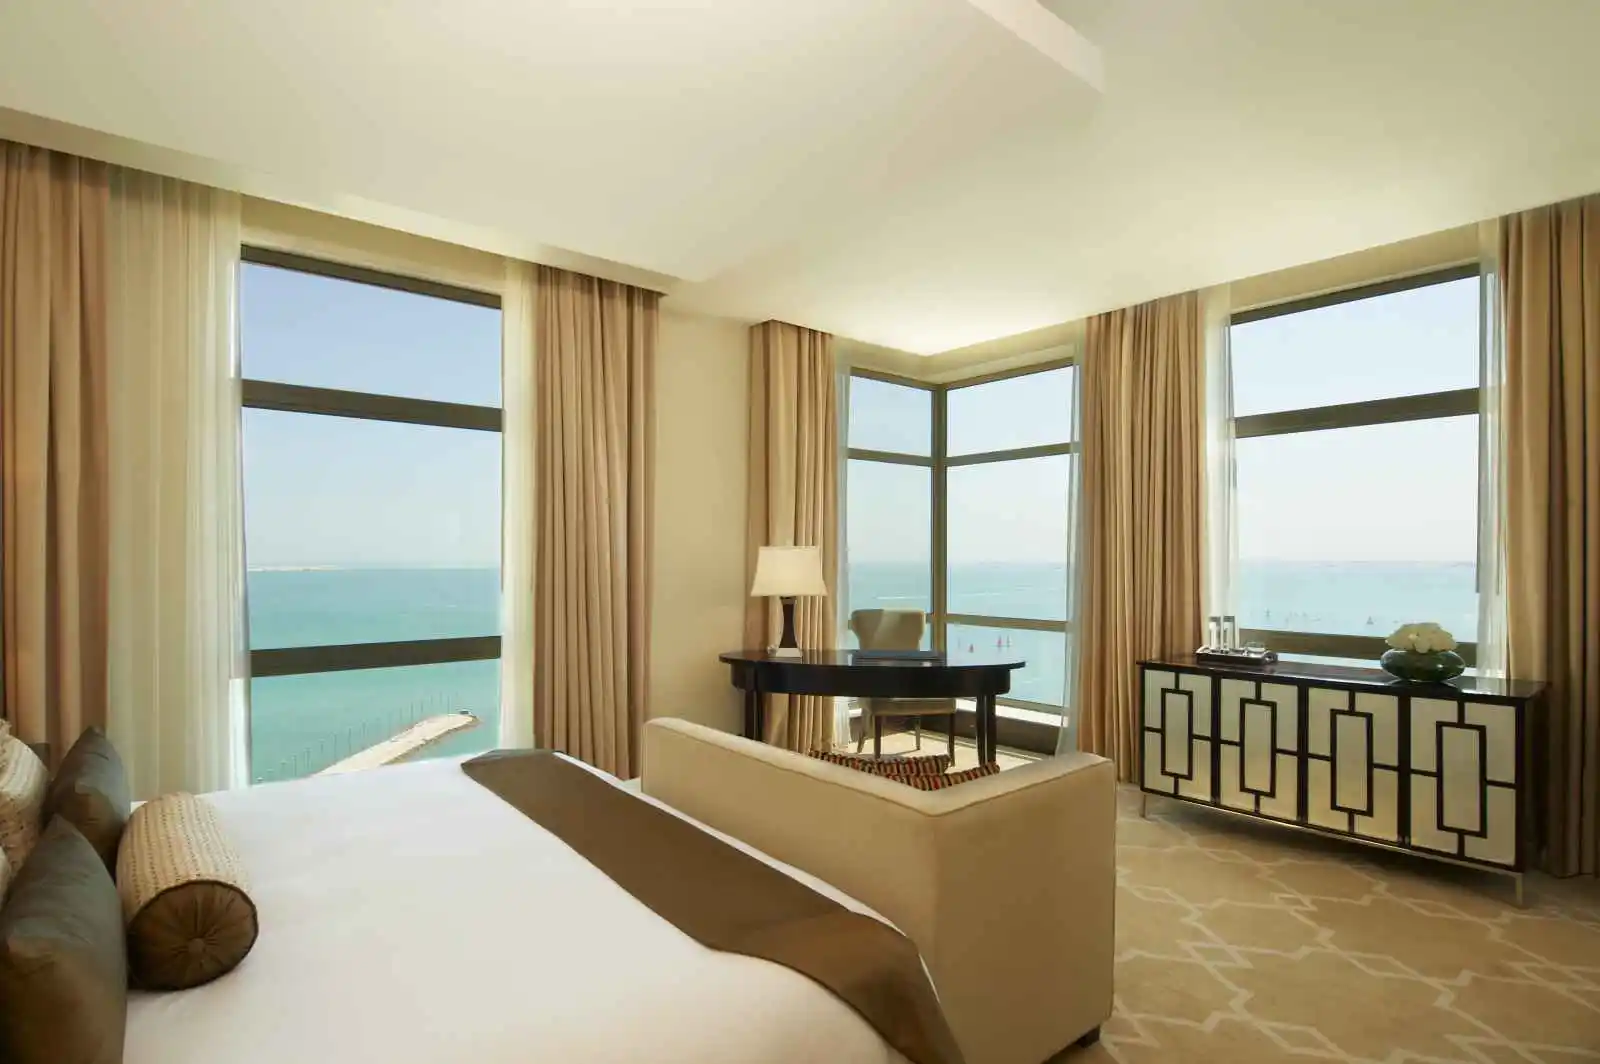 Suite Empire, The St. Regis Doha, Qatar